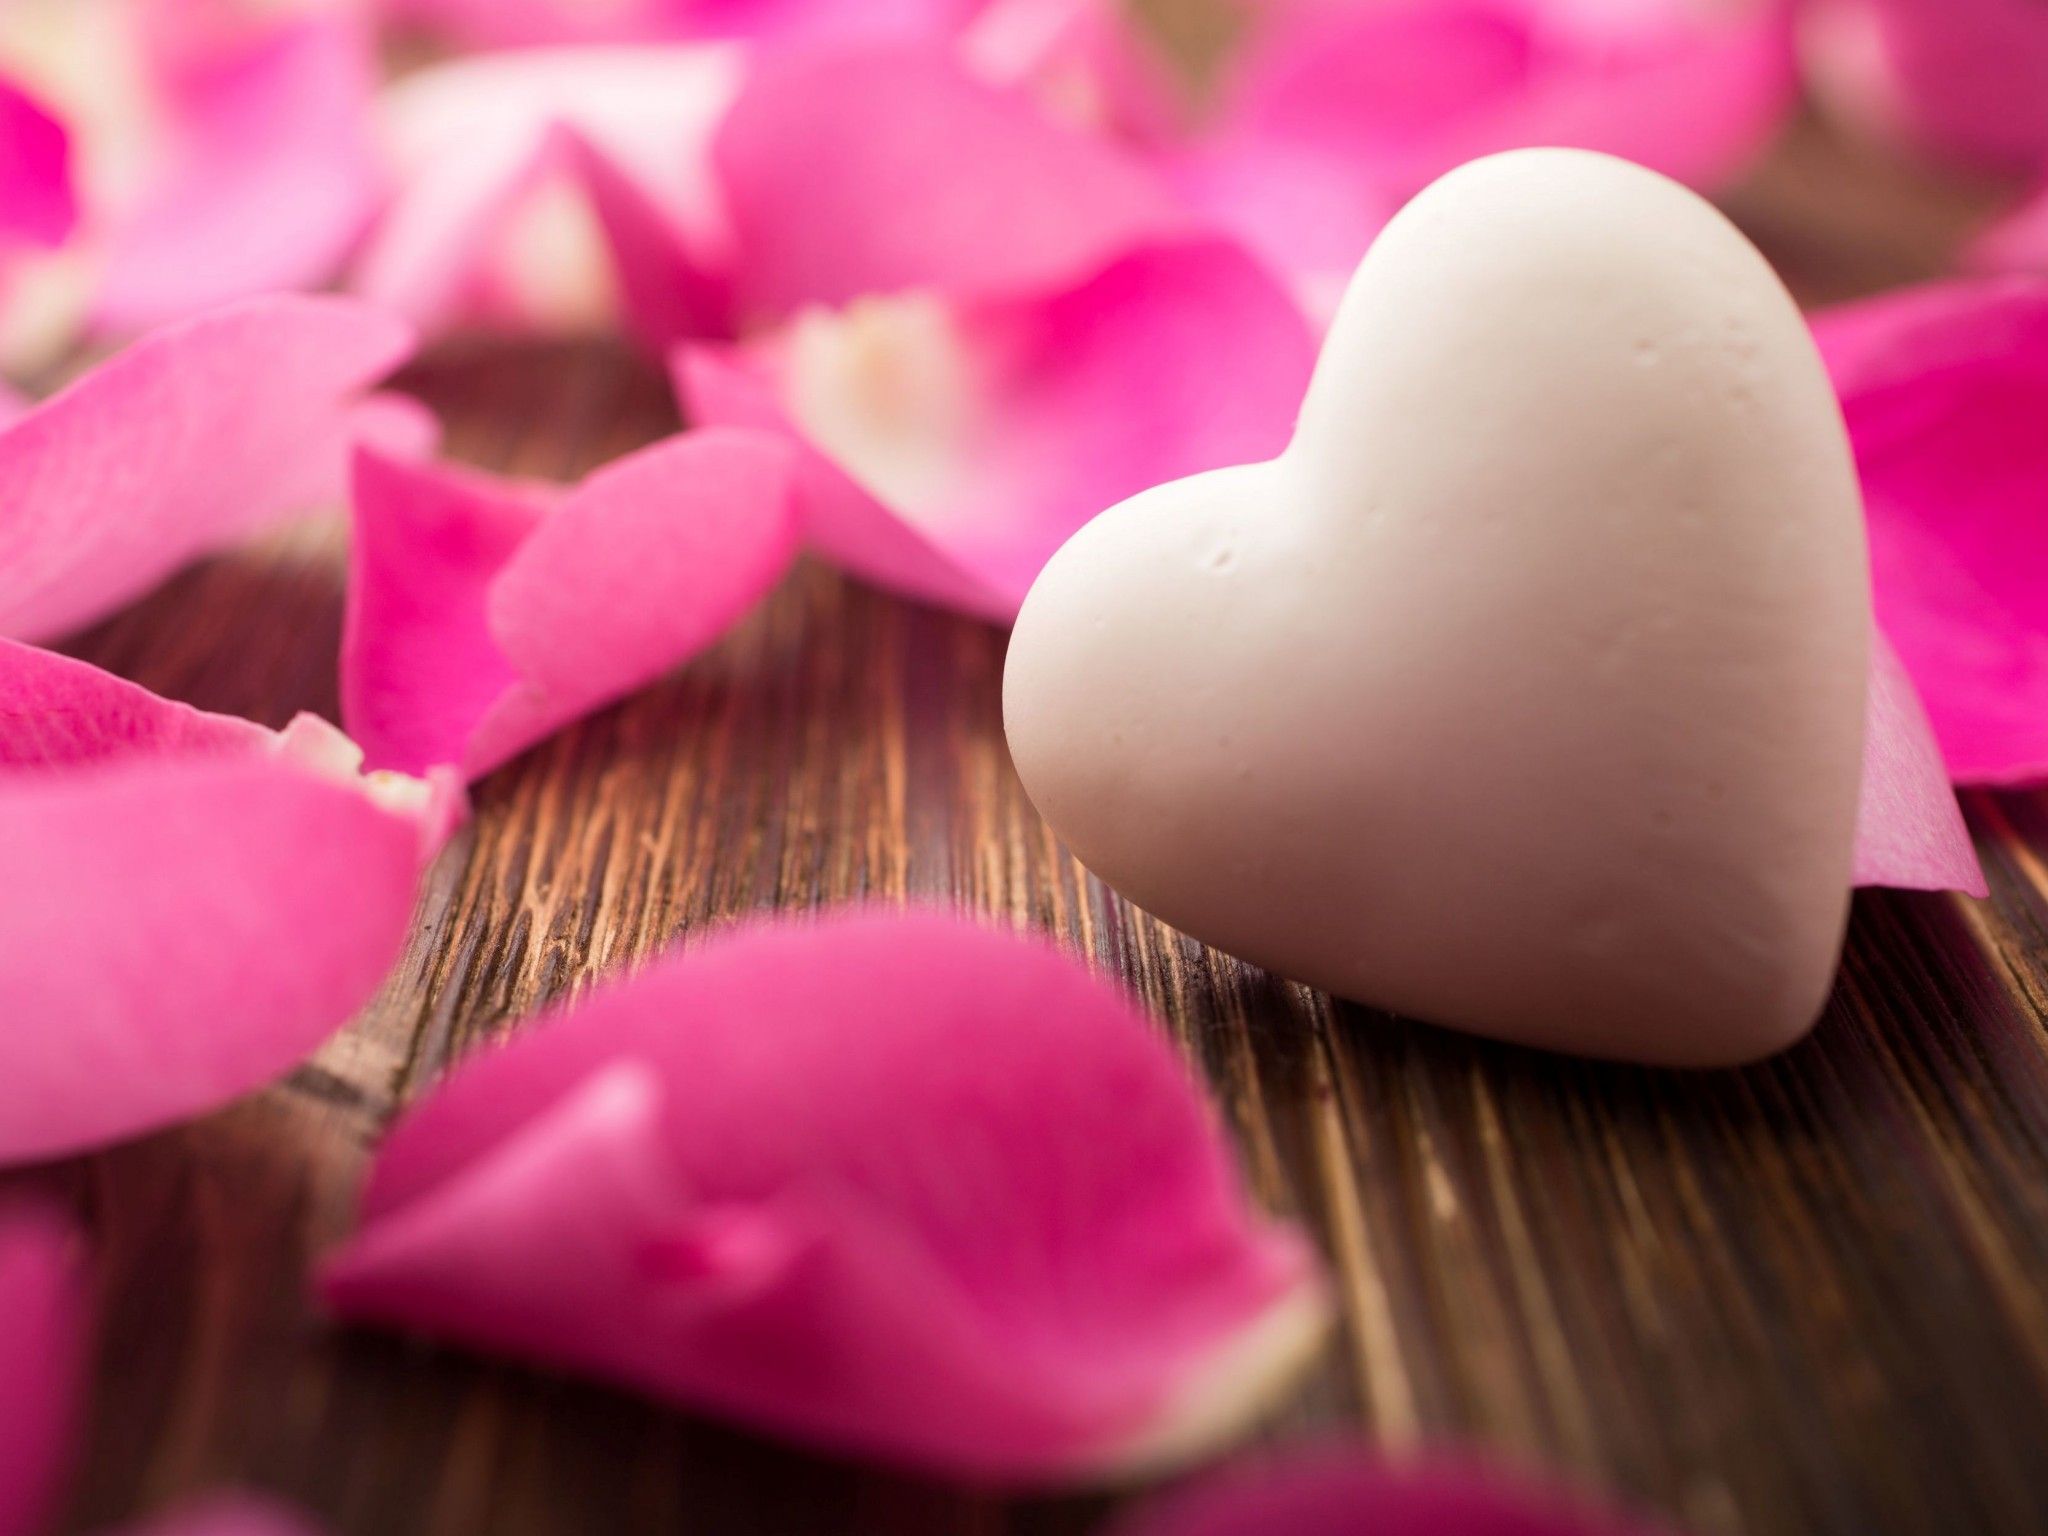 Love heart 4K Wallpaper, White heart, Rose petals, Wooden background, Closeup, Bokeh, Love